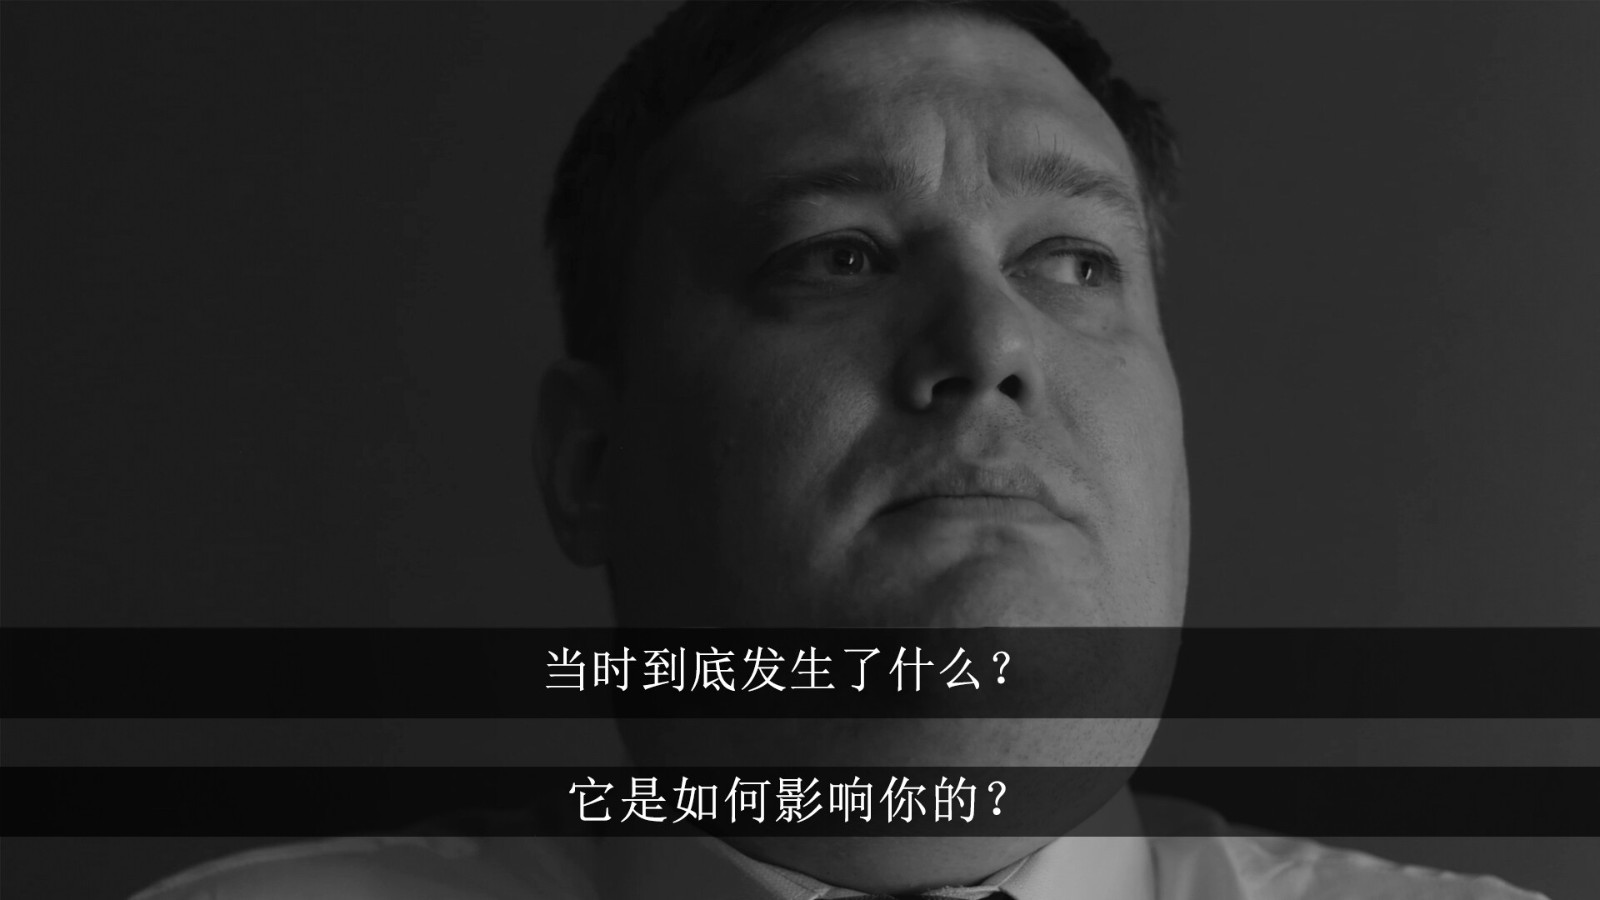 互动式电影《俄罗斯精神田园》Steam页面上线 支持简体中文